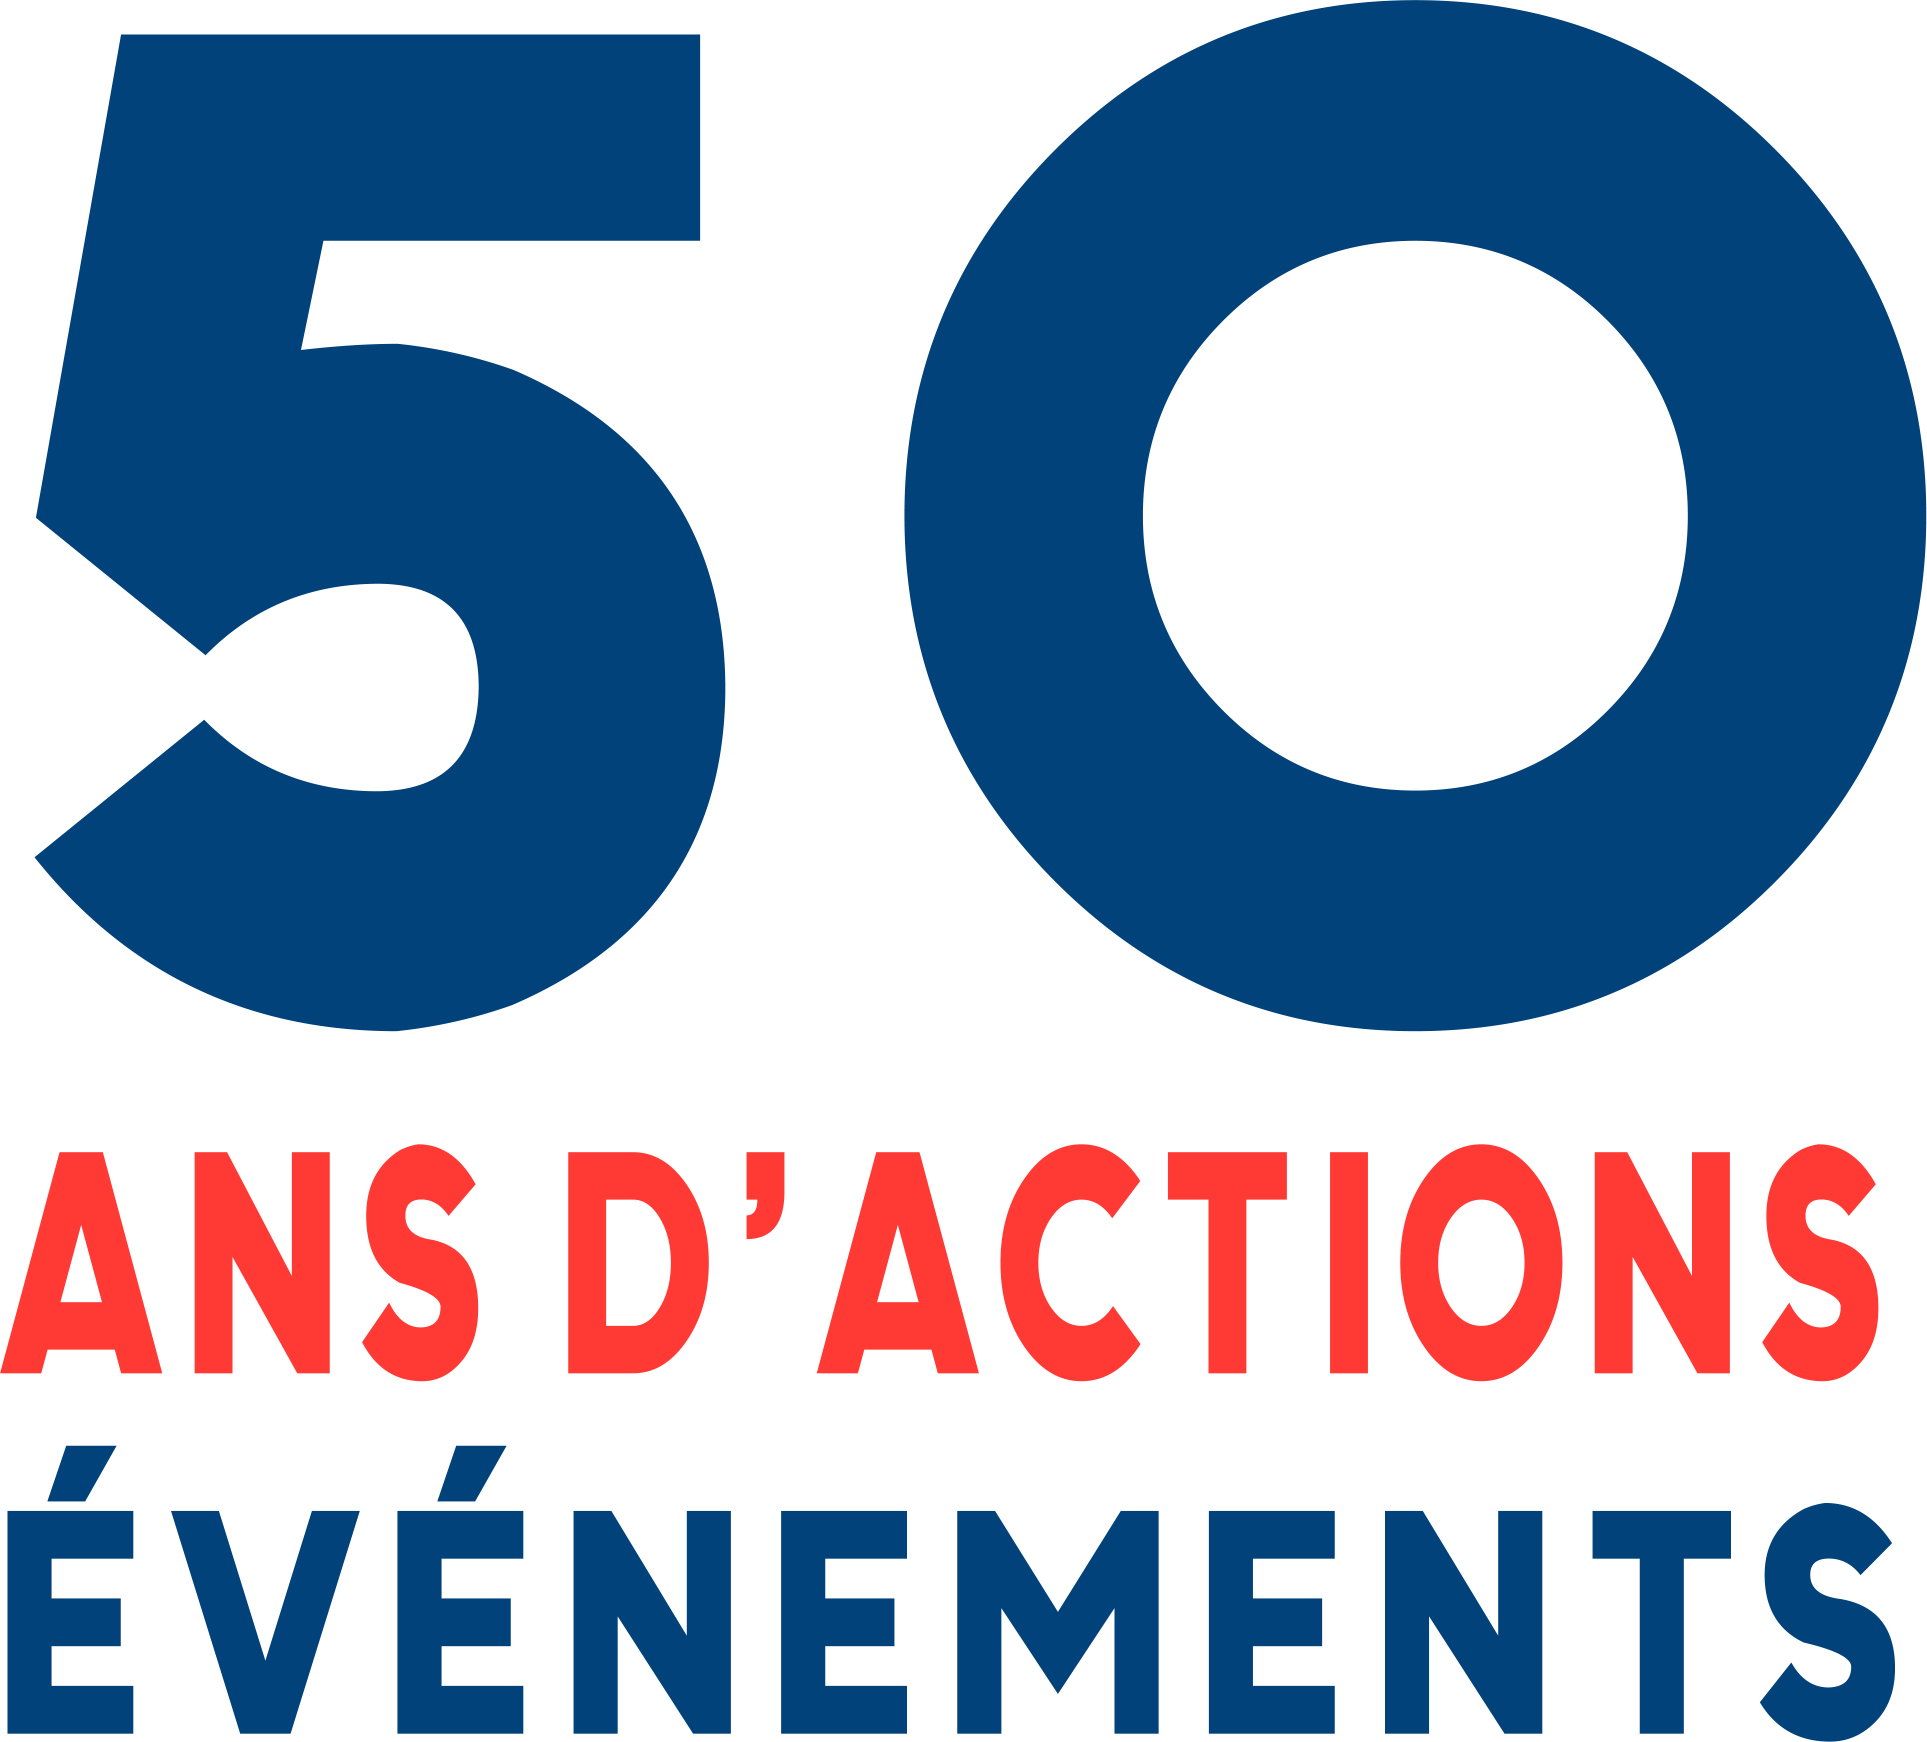 Logo 50 ans d'actions - 50 événements de PARTAGE